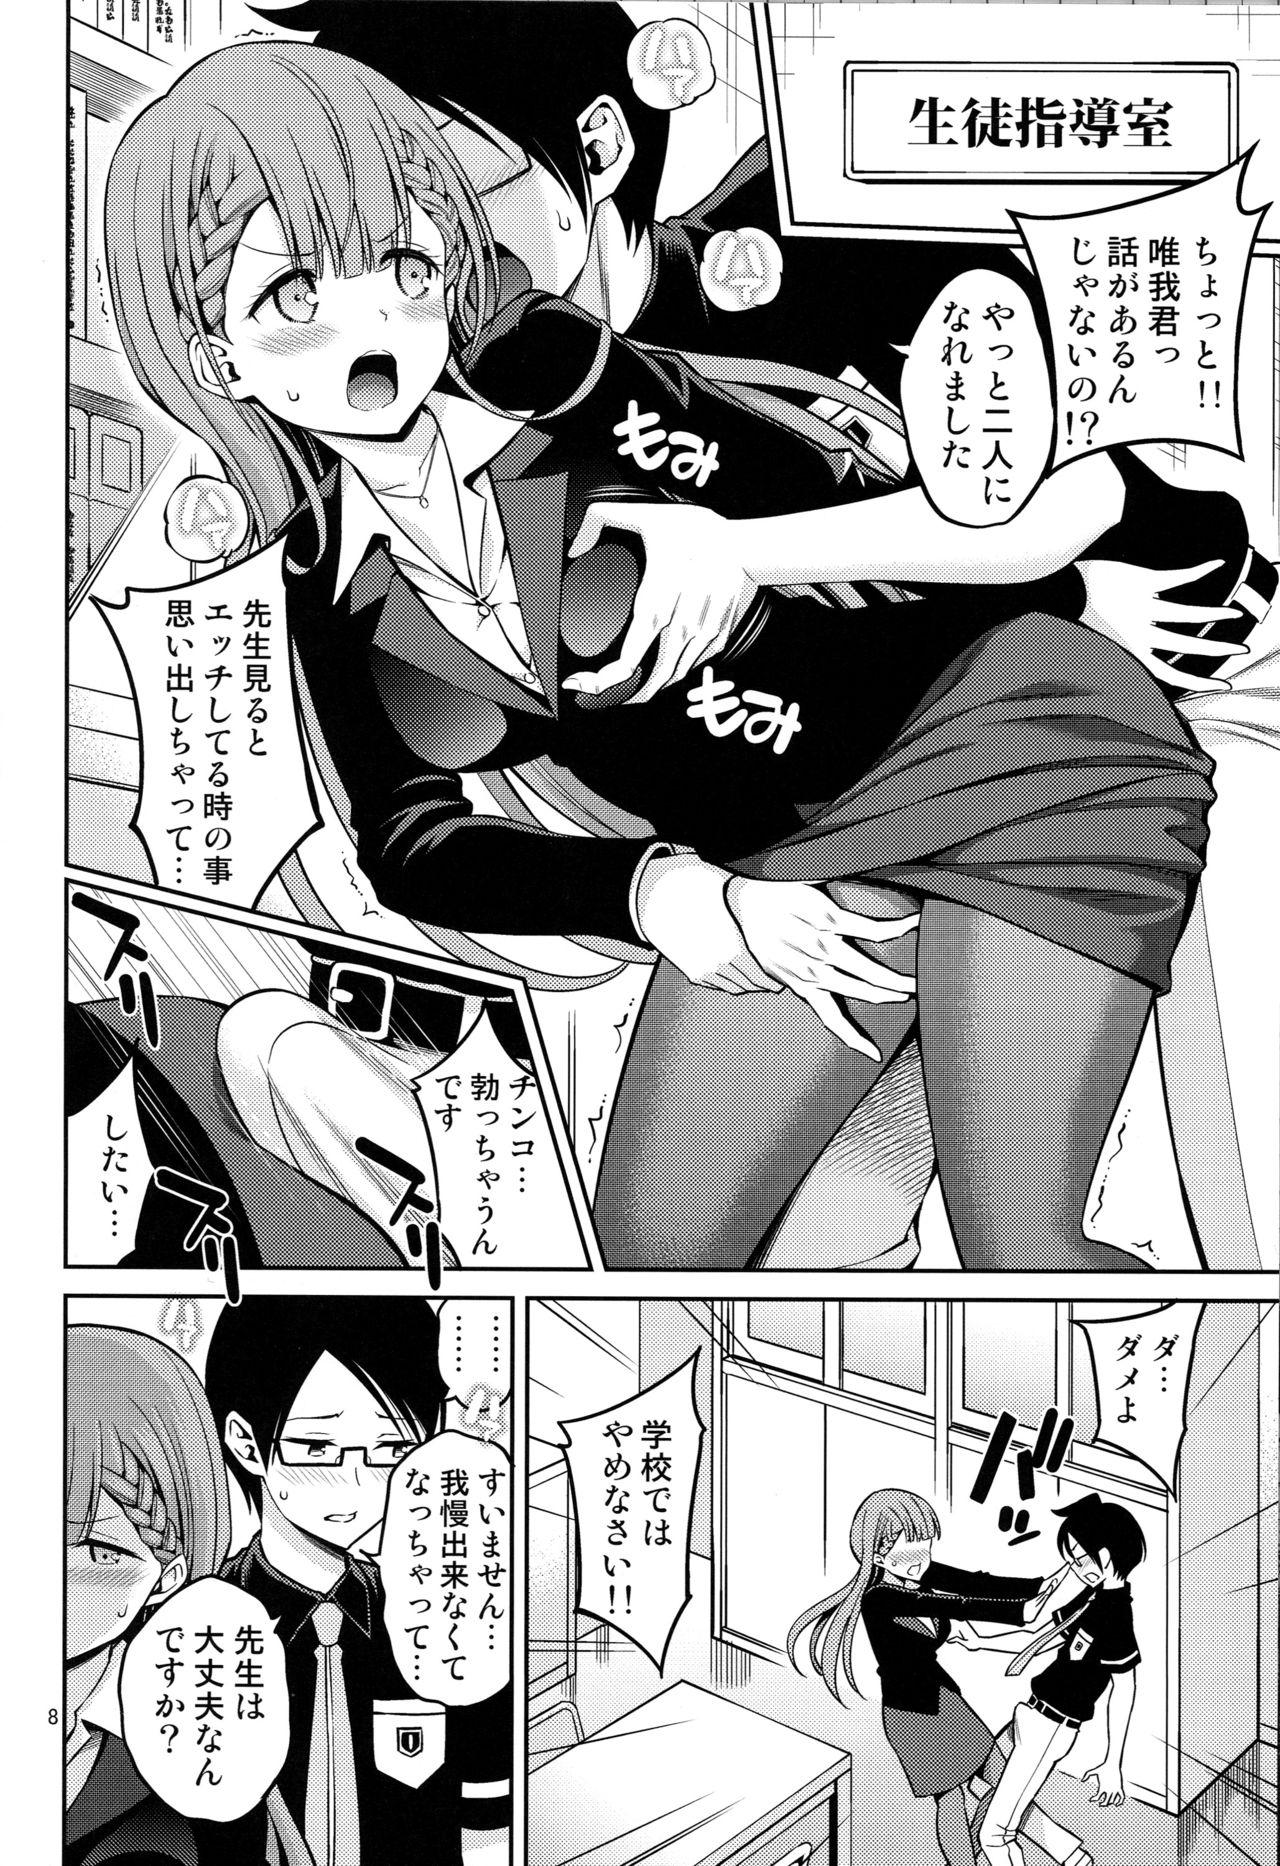 Chichona Kirisu Sensei wa Gaman ga Dekinai - Bokutachi wa benkyou ga dekinai Sperm - Page 7